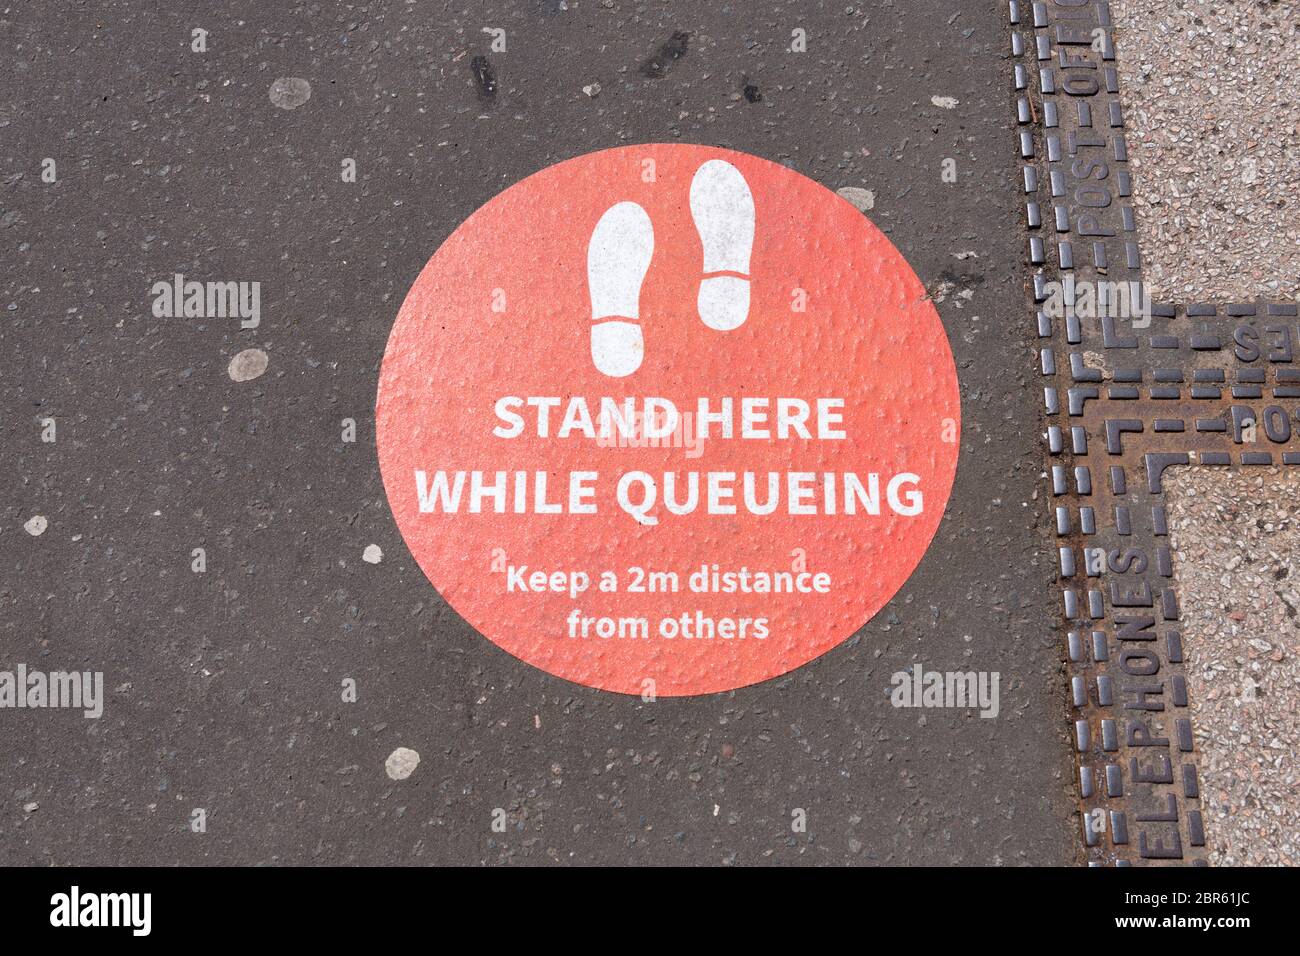 Social Distancing Queue Schild - Stehen Sie hier während der Coronavirus Pandemie auf dem Bürgersteig, während Sie sich in der Schlange anstellen Stockfoto